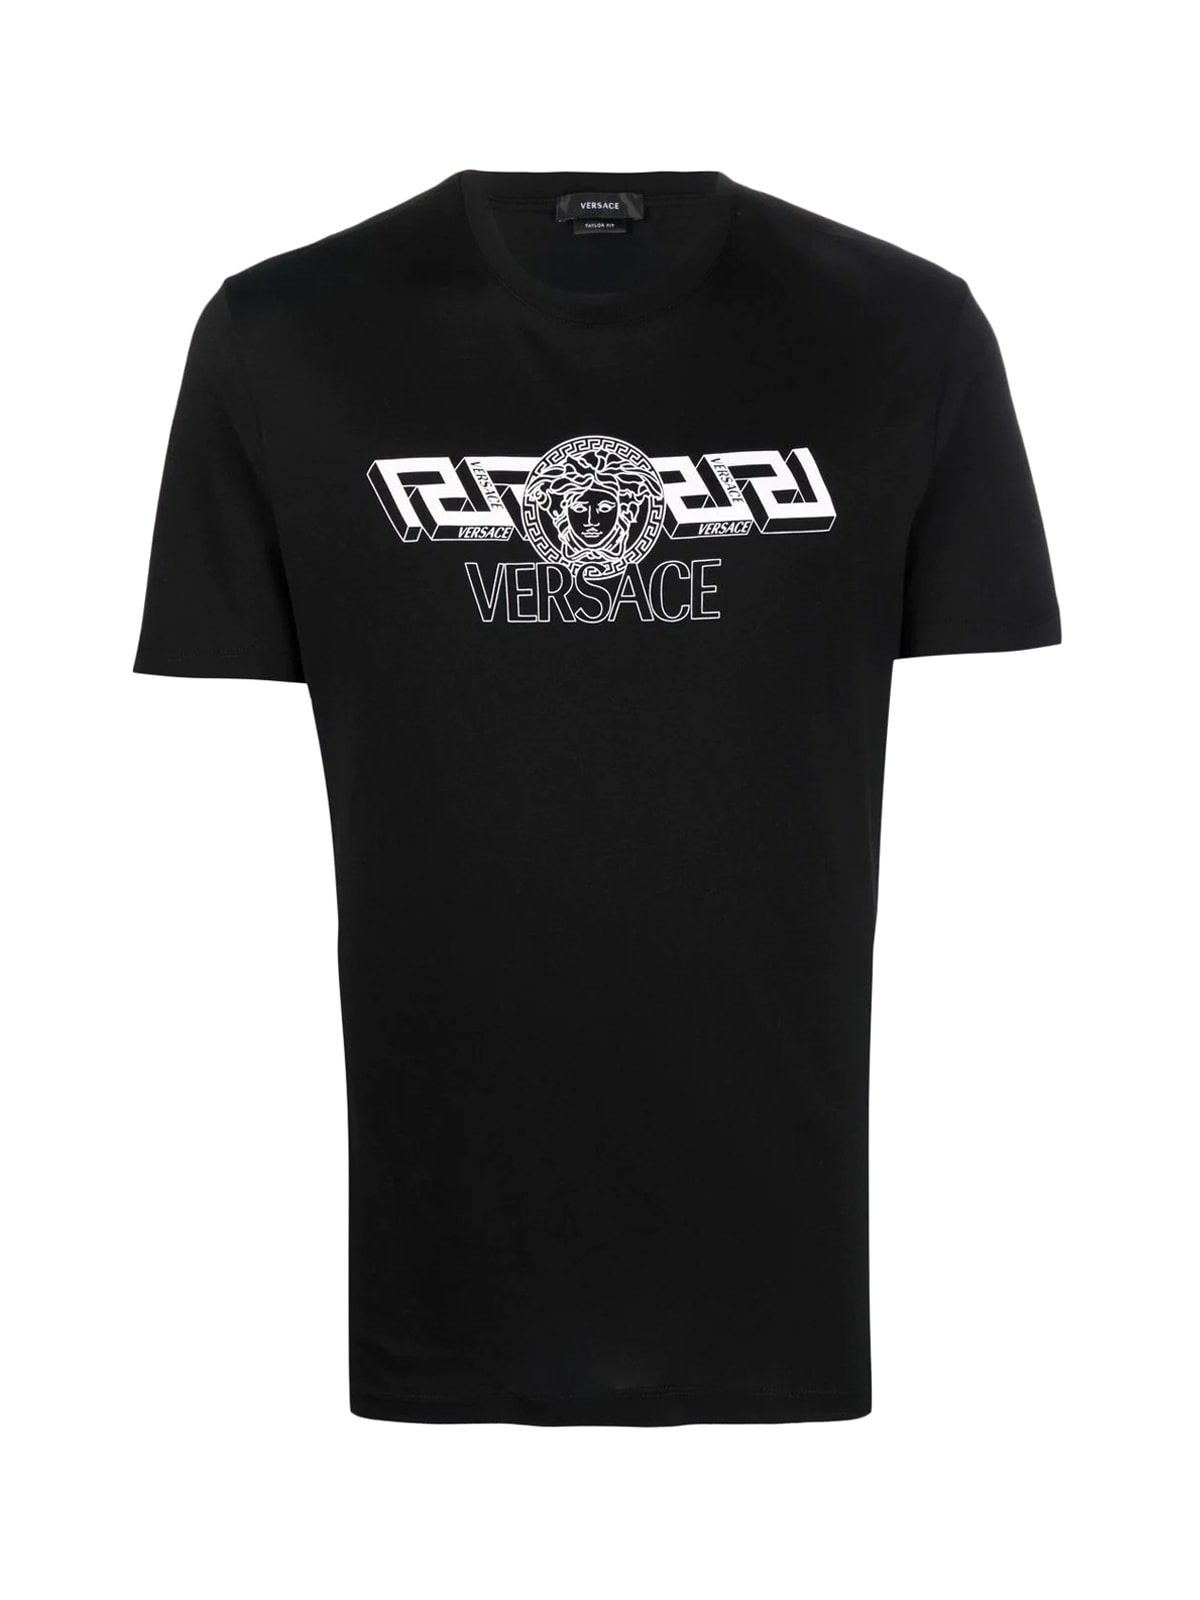 Versace T-shirt Jersey Print